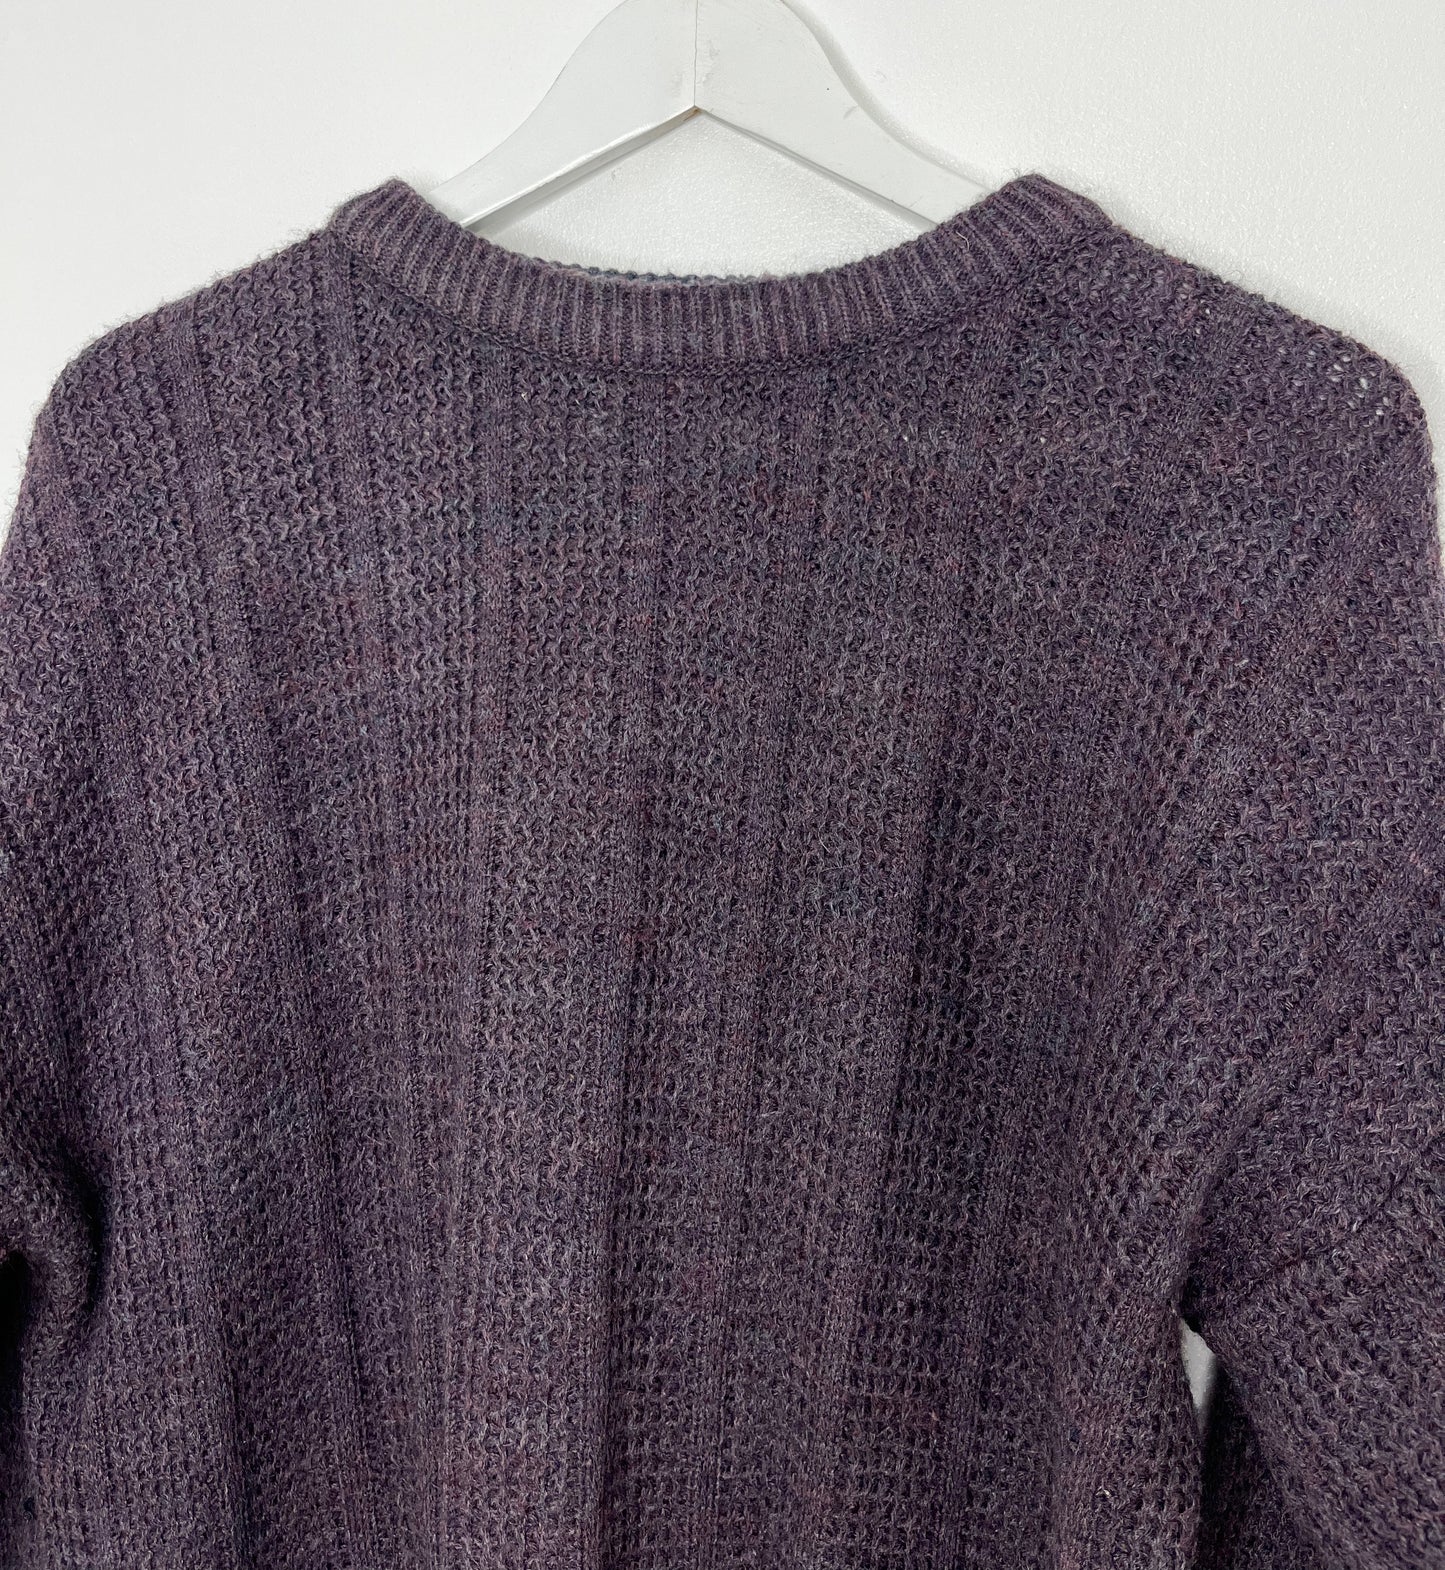 Purple Knit Vintage Jumper